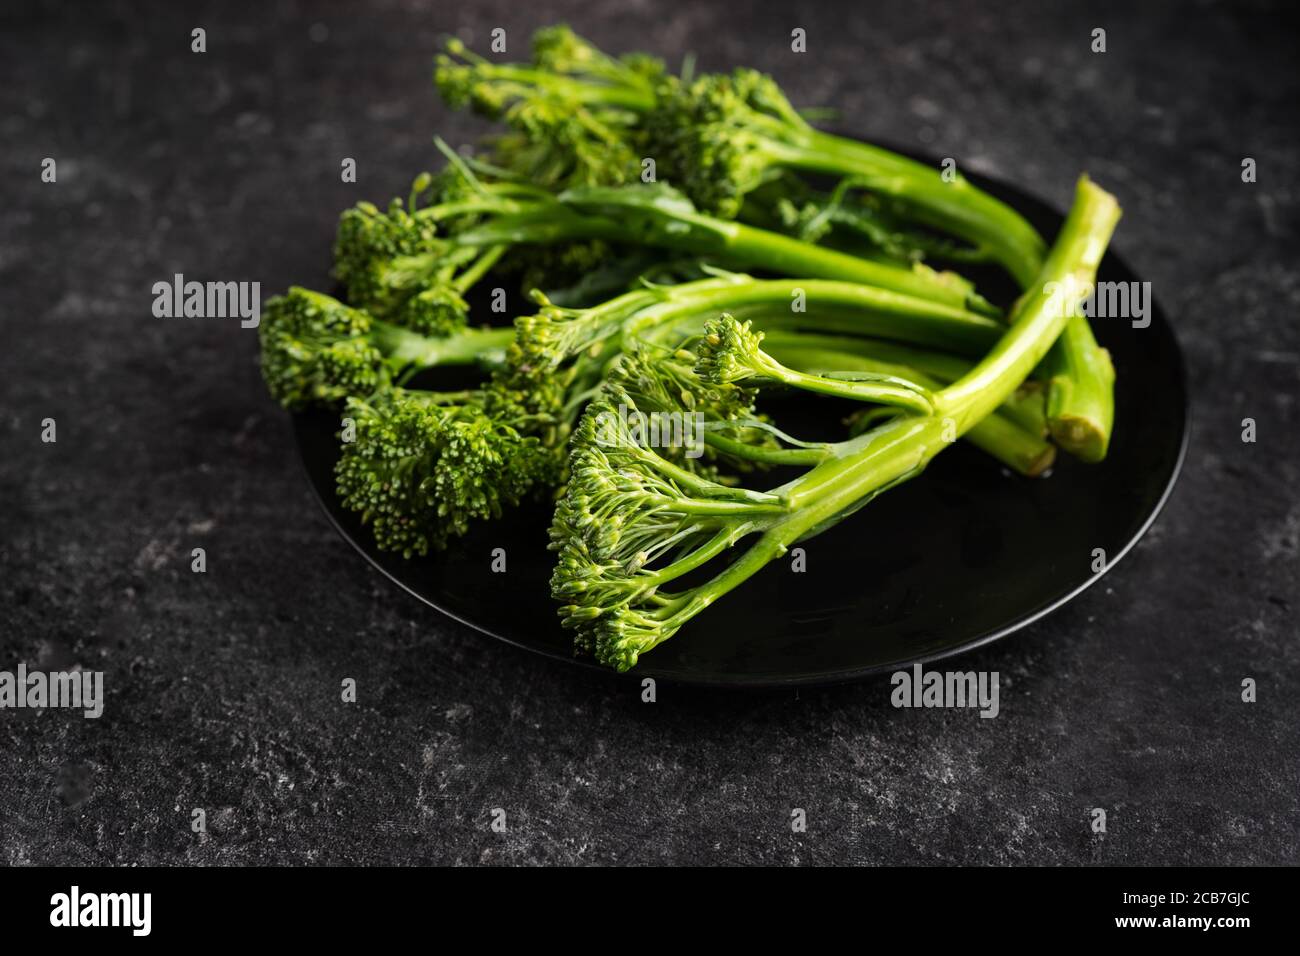 Gros plan d'une nouvelle sorte de chou appelé broccolini Banque D'Images